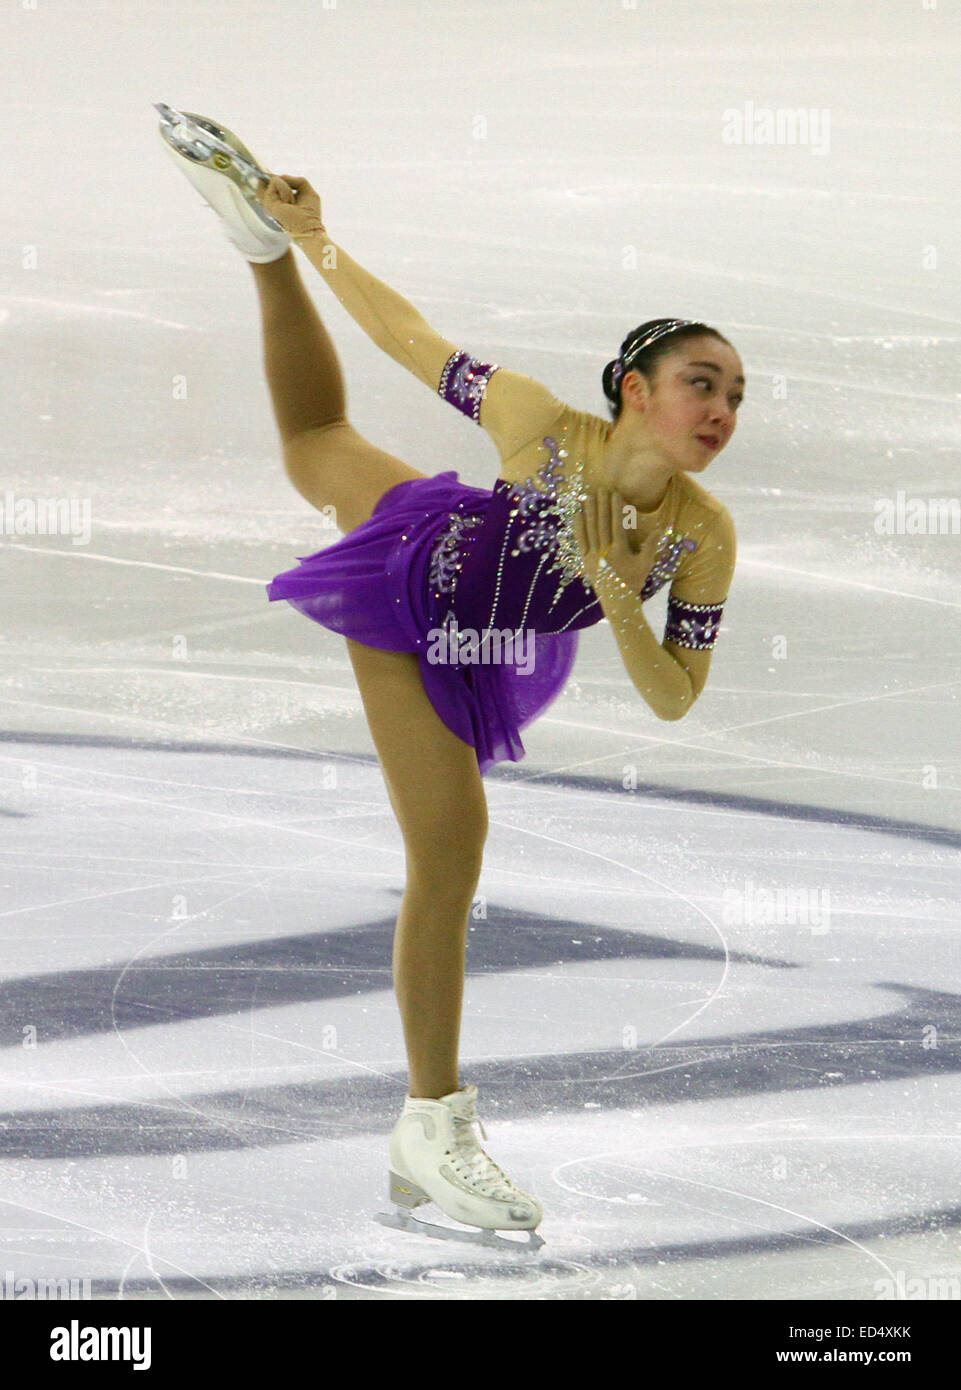 Barcelone, Espagne. Dec 11, 2014. ISU Grand Prix of Figure Skating Final 2014. Picture Show Rika Hongo (JPN) au cours de l'Action © programme court dames Plus Sport/Alamy Live News Banque D'Images